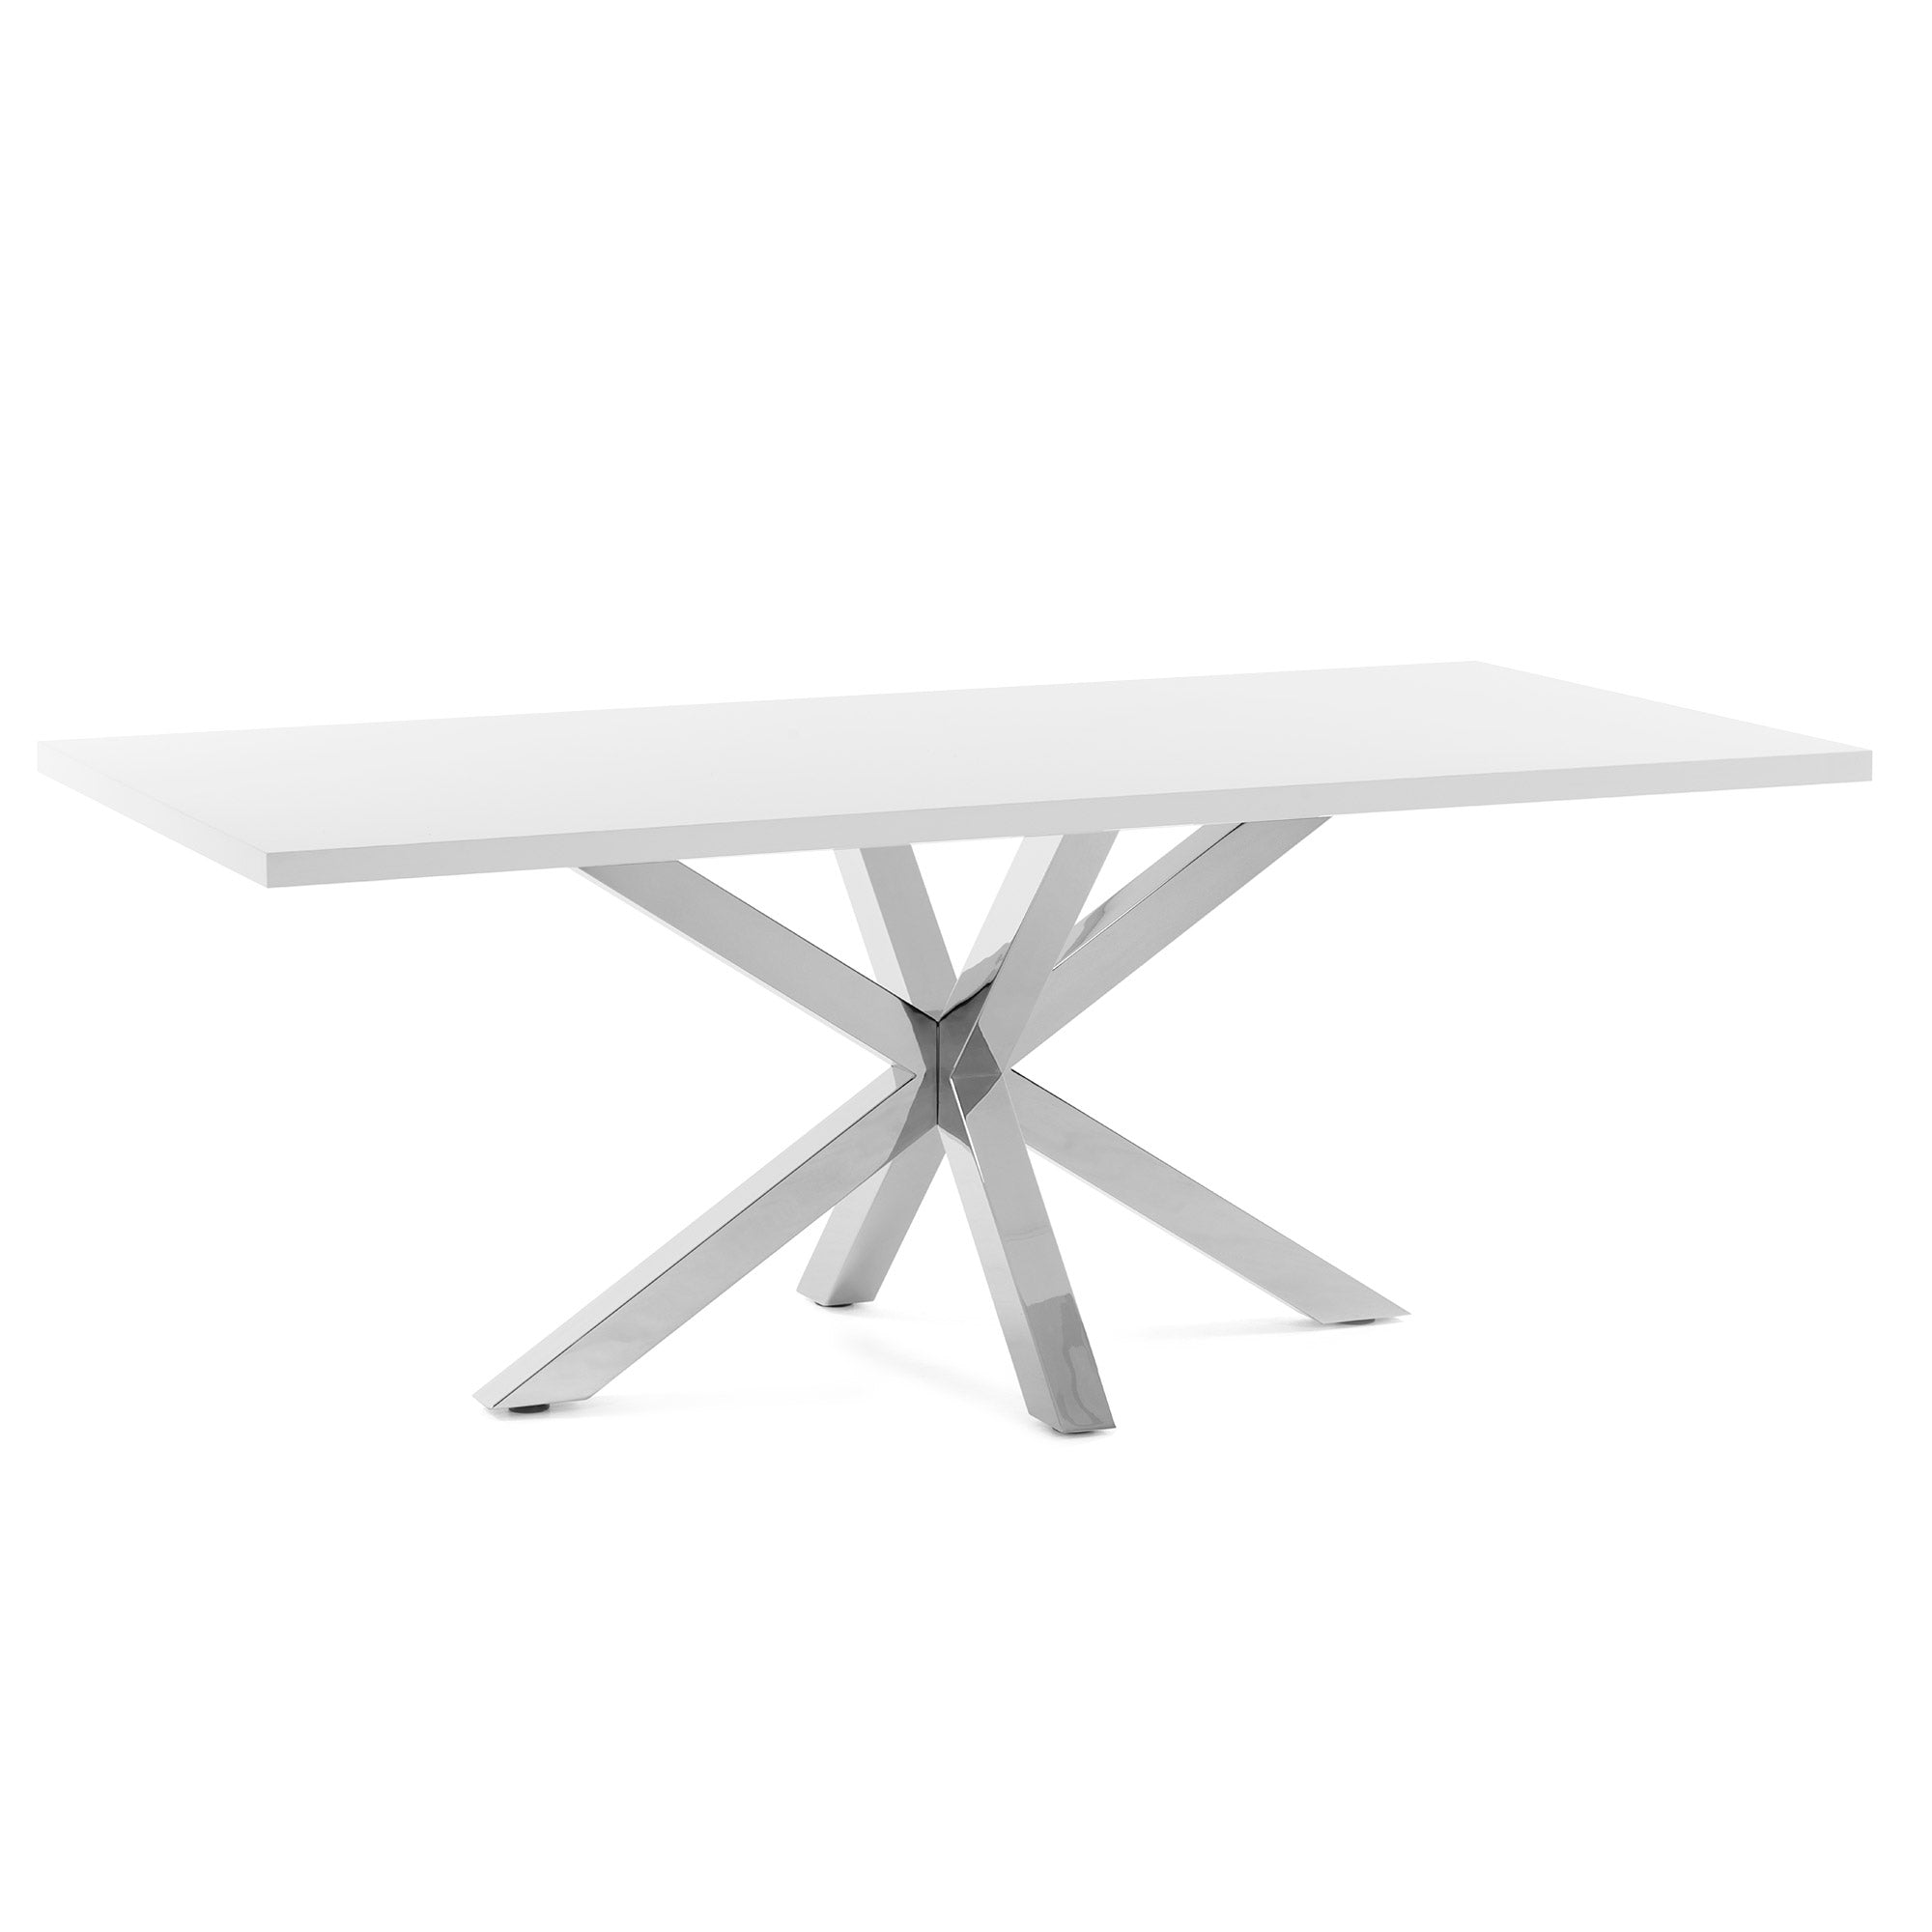 Argo table 160 cm white melamine stainless steel legs